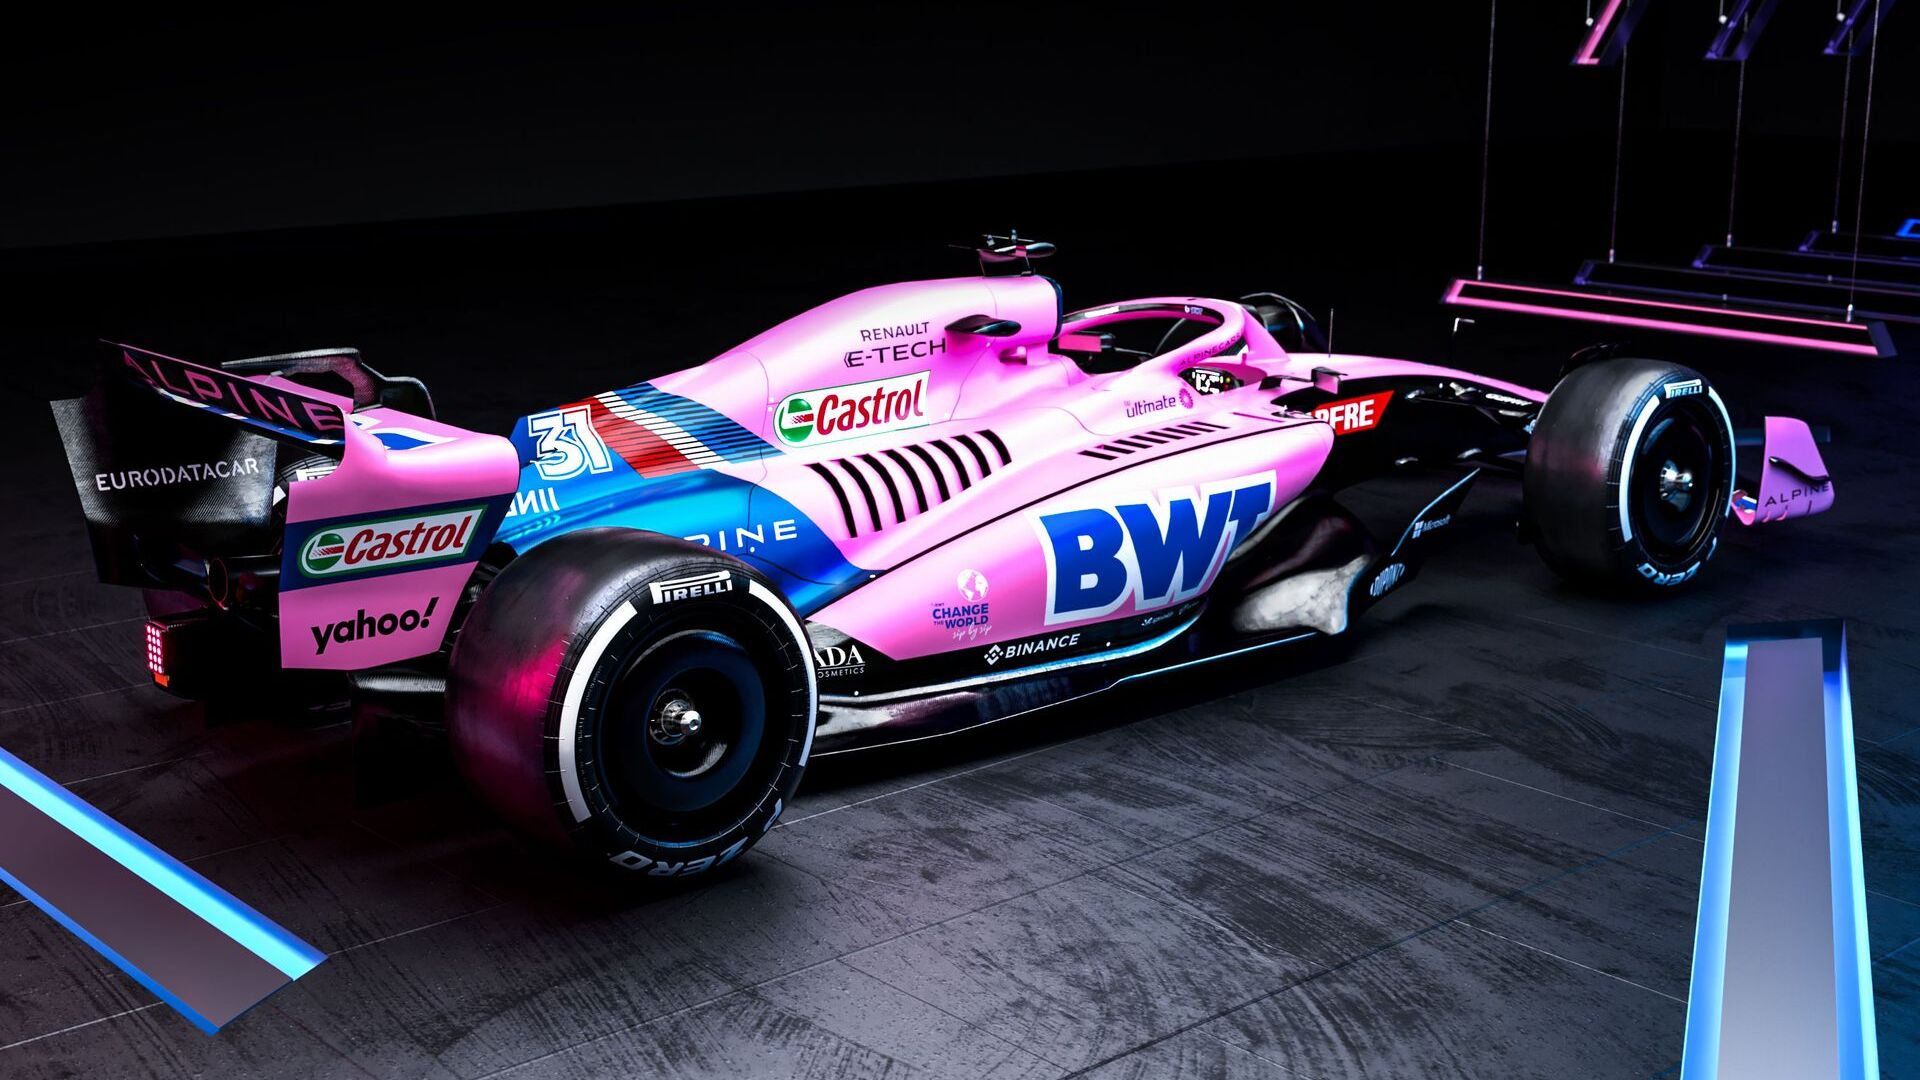 La monoposto del BWT Alpine F1 Team inizierà la stagione 2022 di Formula 1 con una livrea rosa